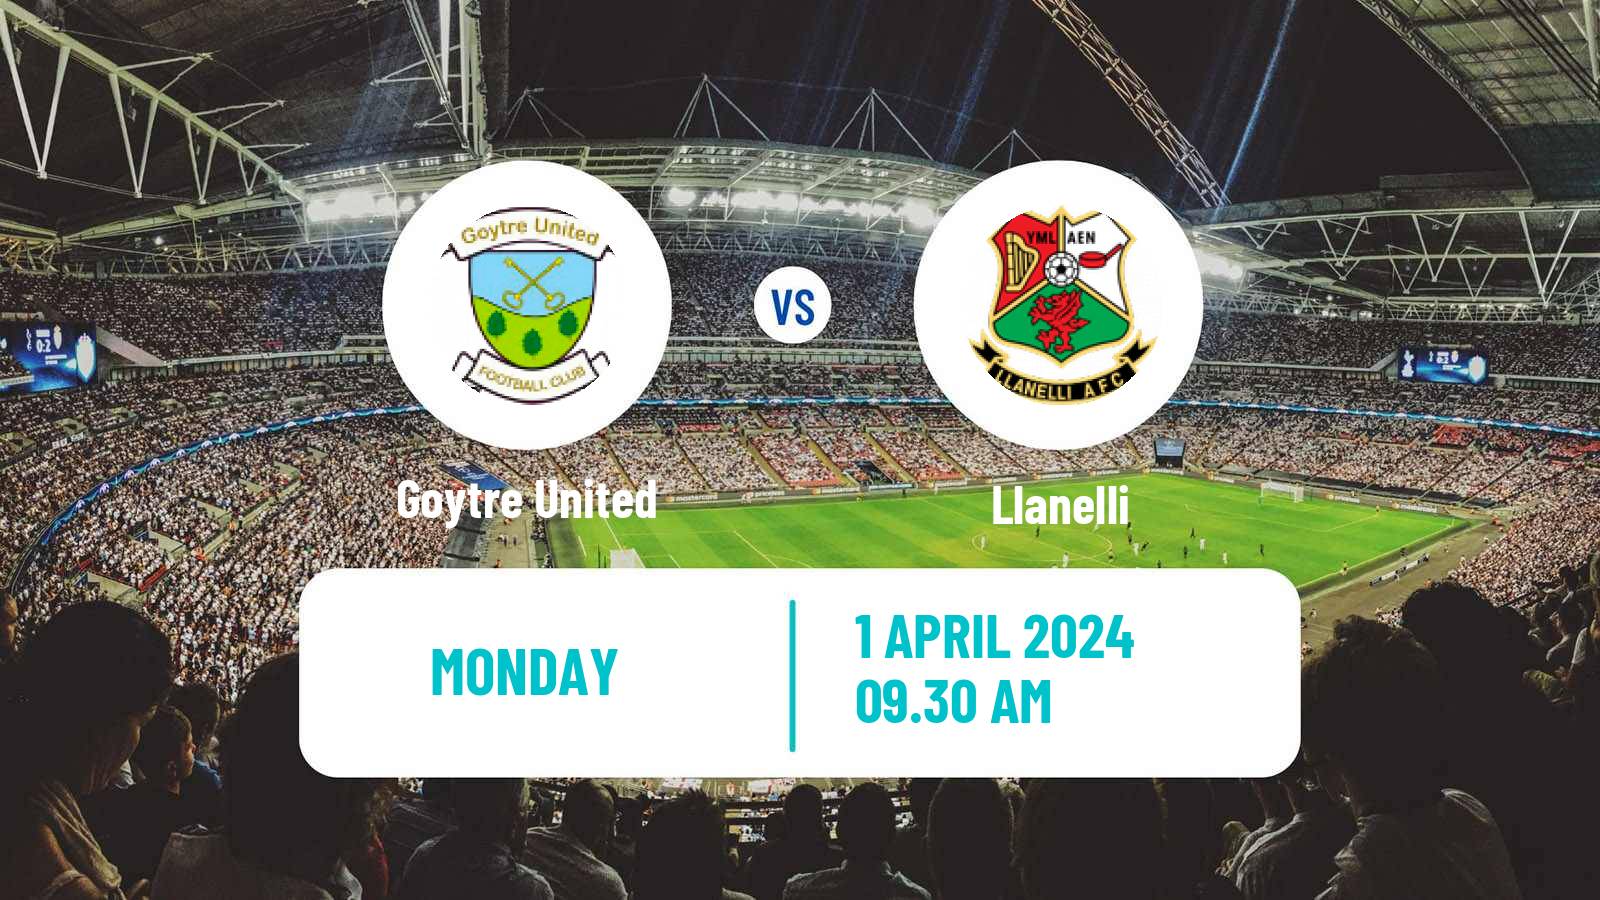 Soccer Welsh Cymru South Goytre United - Llanelli